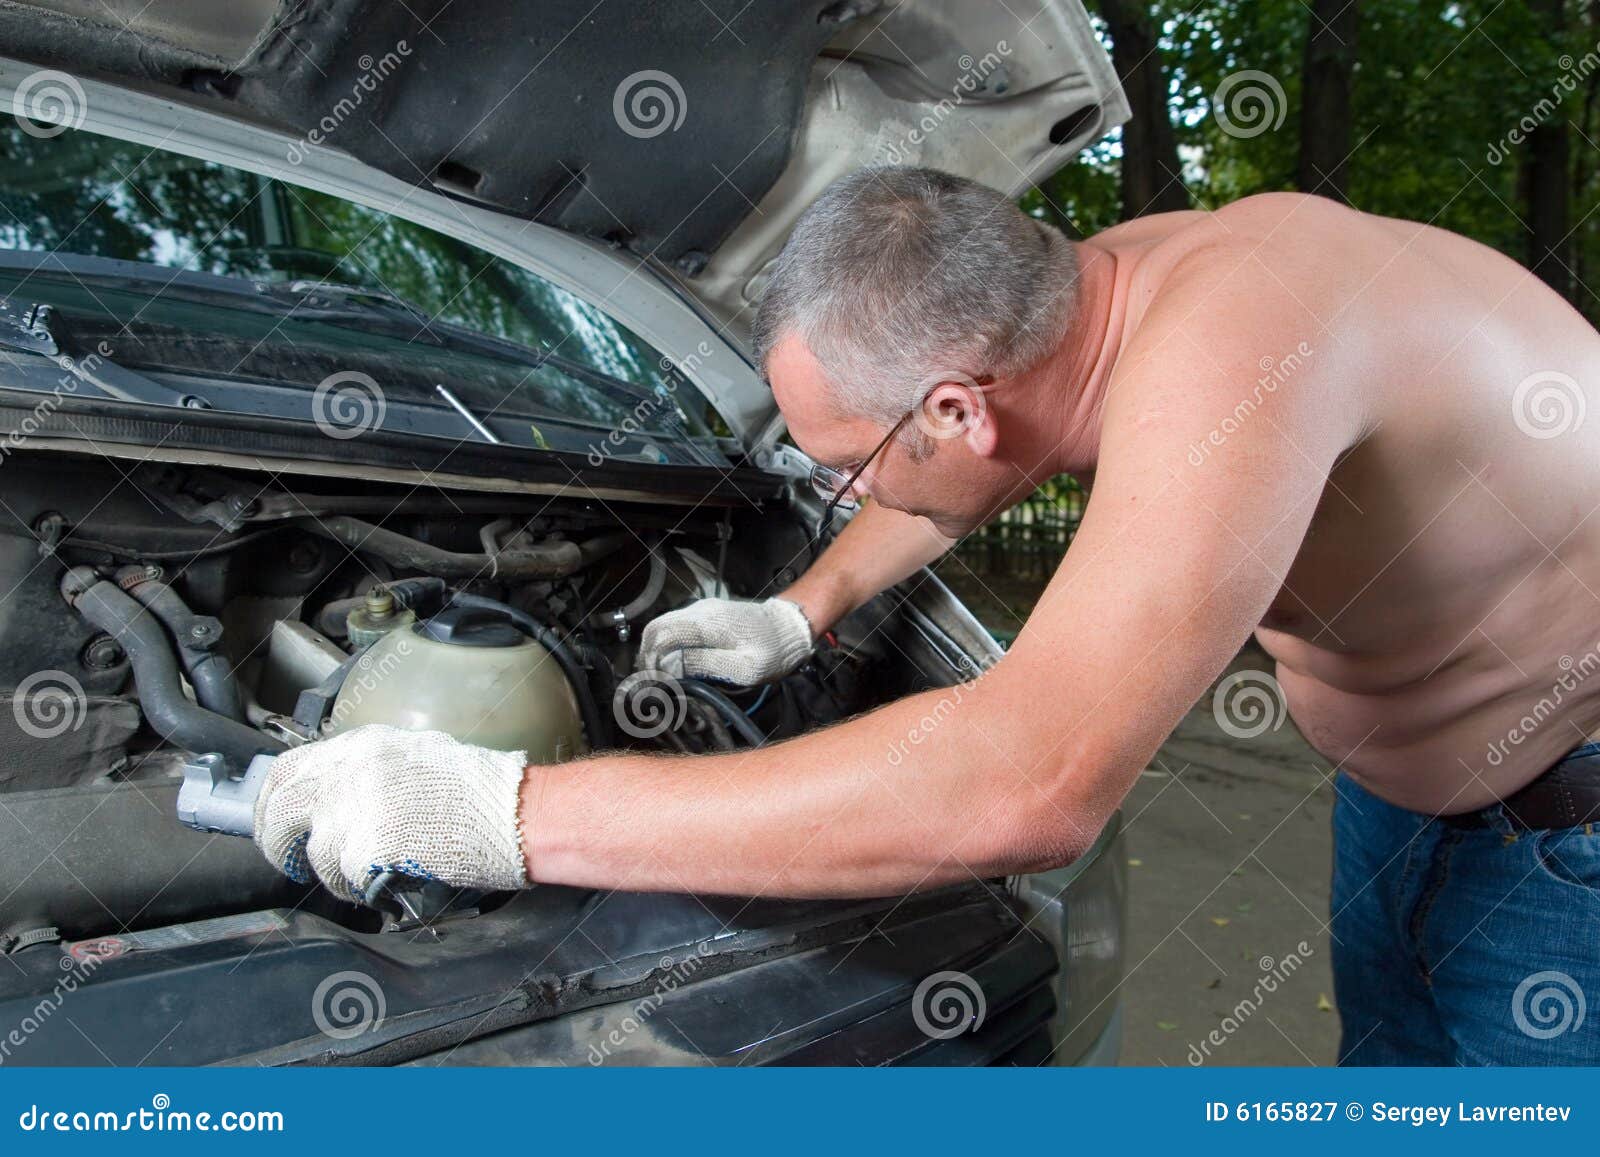 Fixes his car